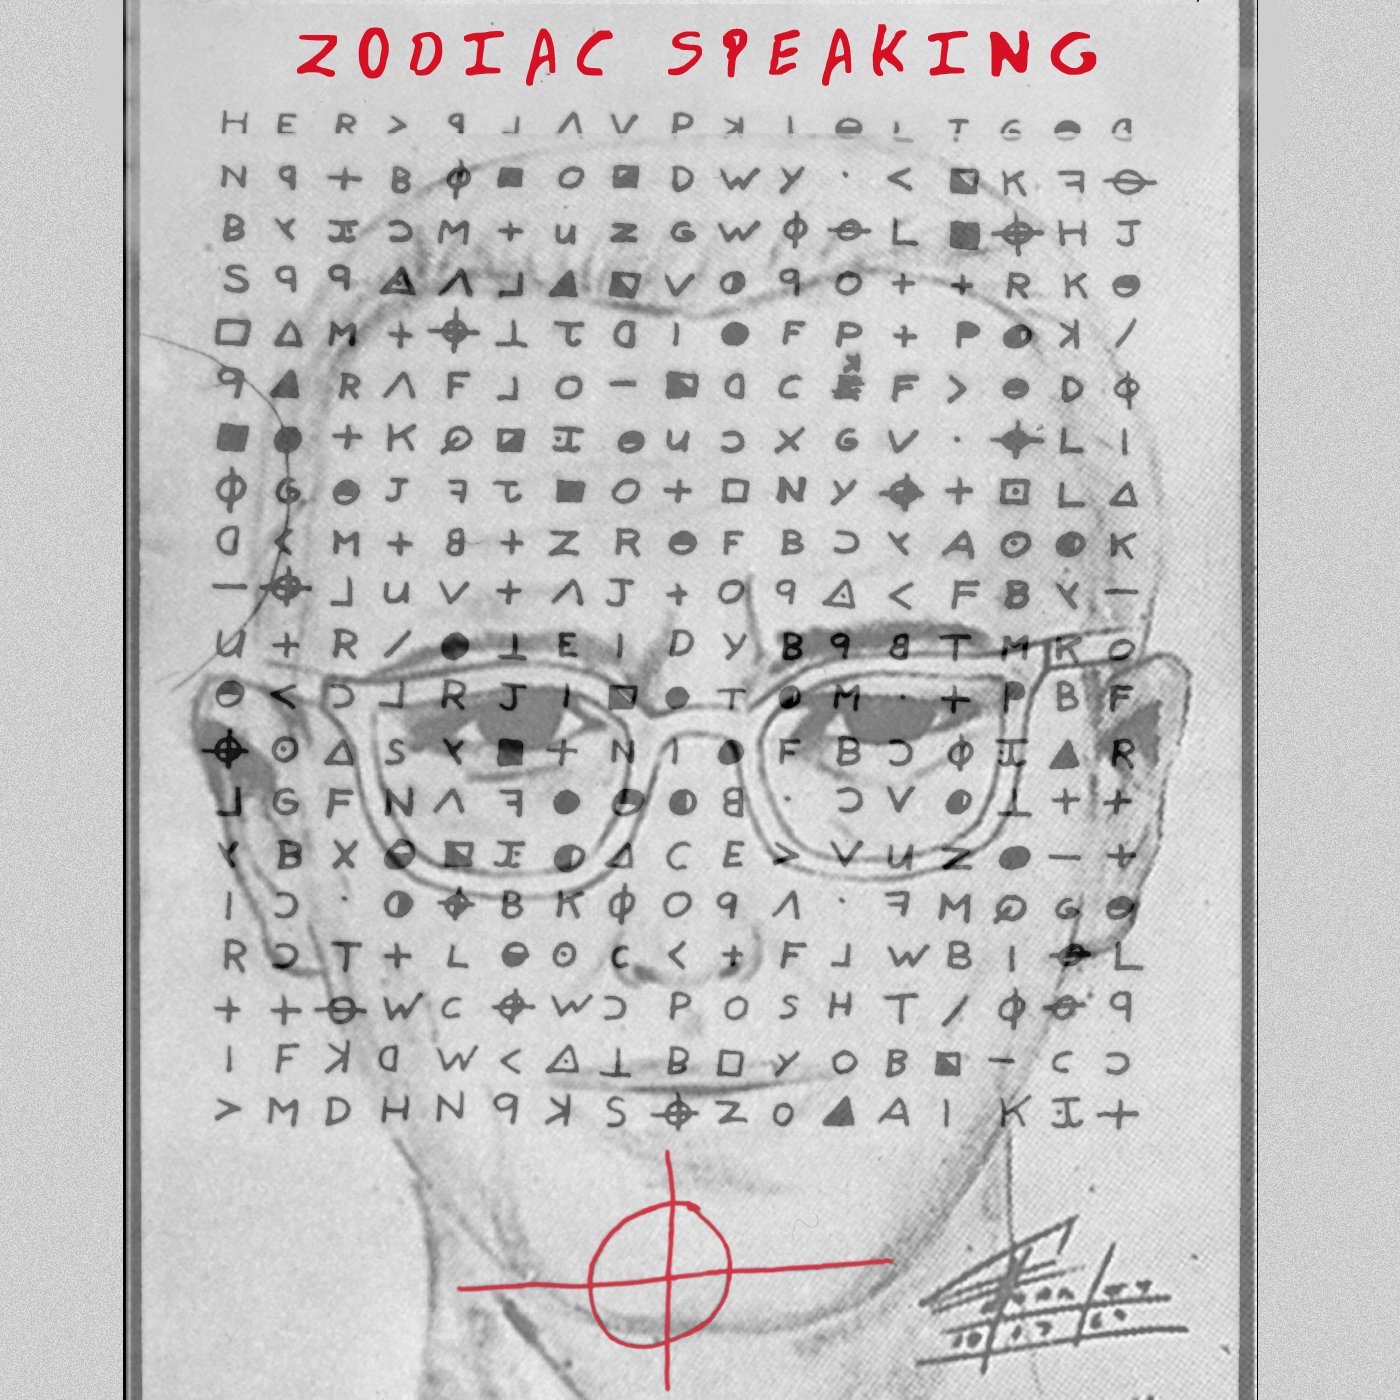 Zodiac Killer Podcast - Zodiac Speaking.JPG